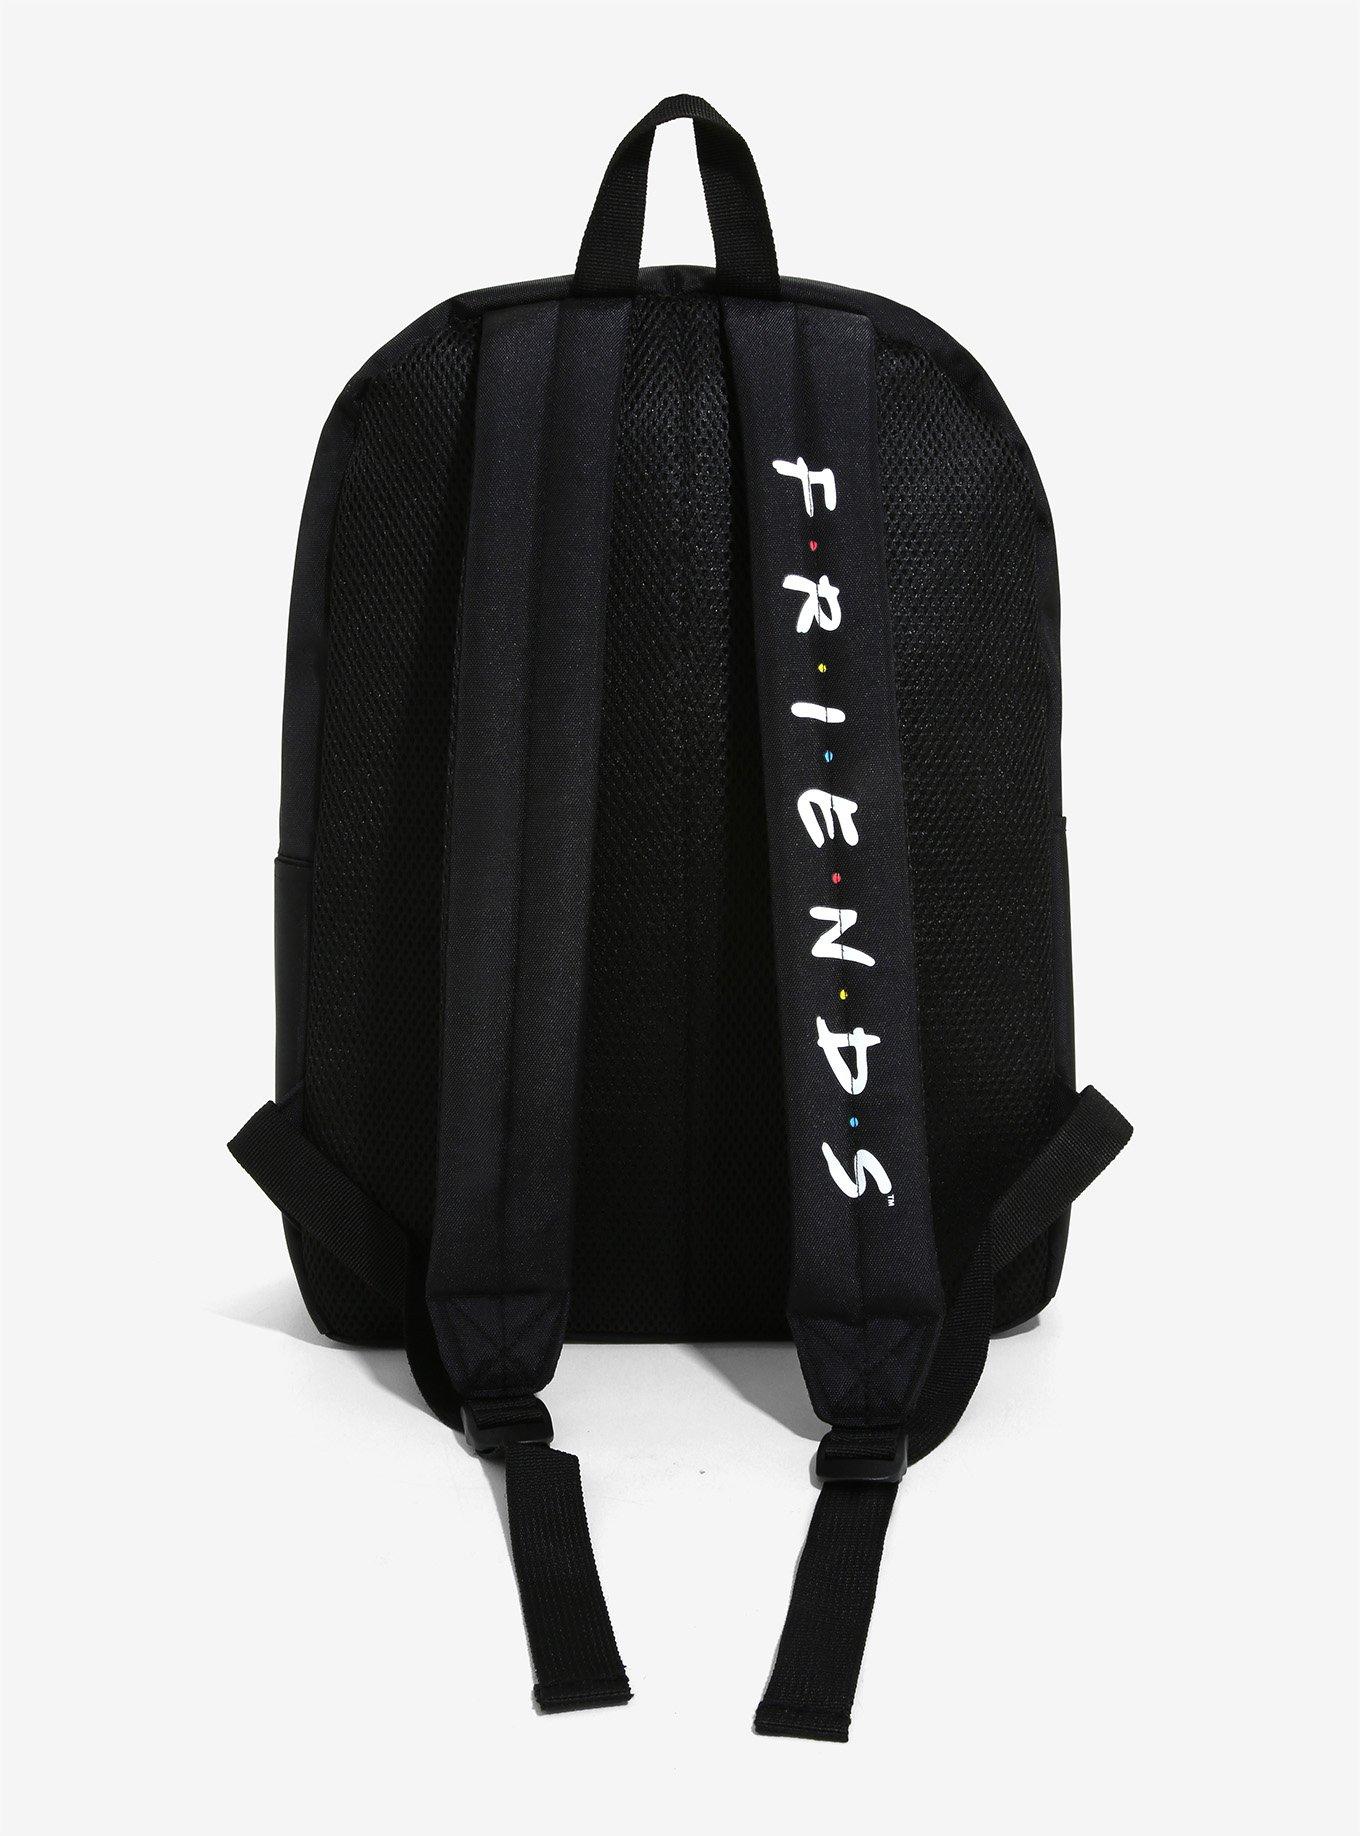 Friends Central Perk Backpack, , alternate